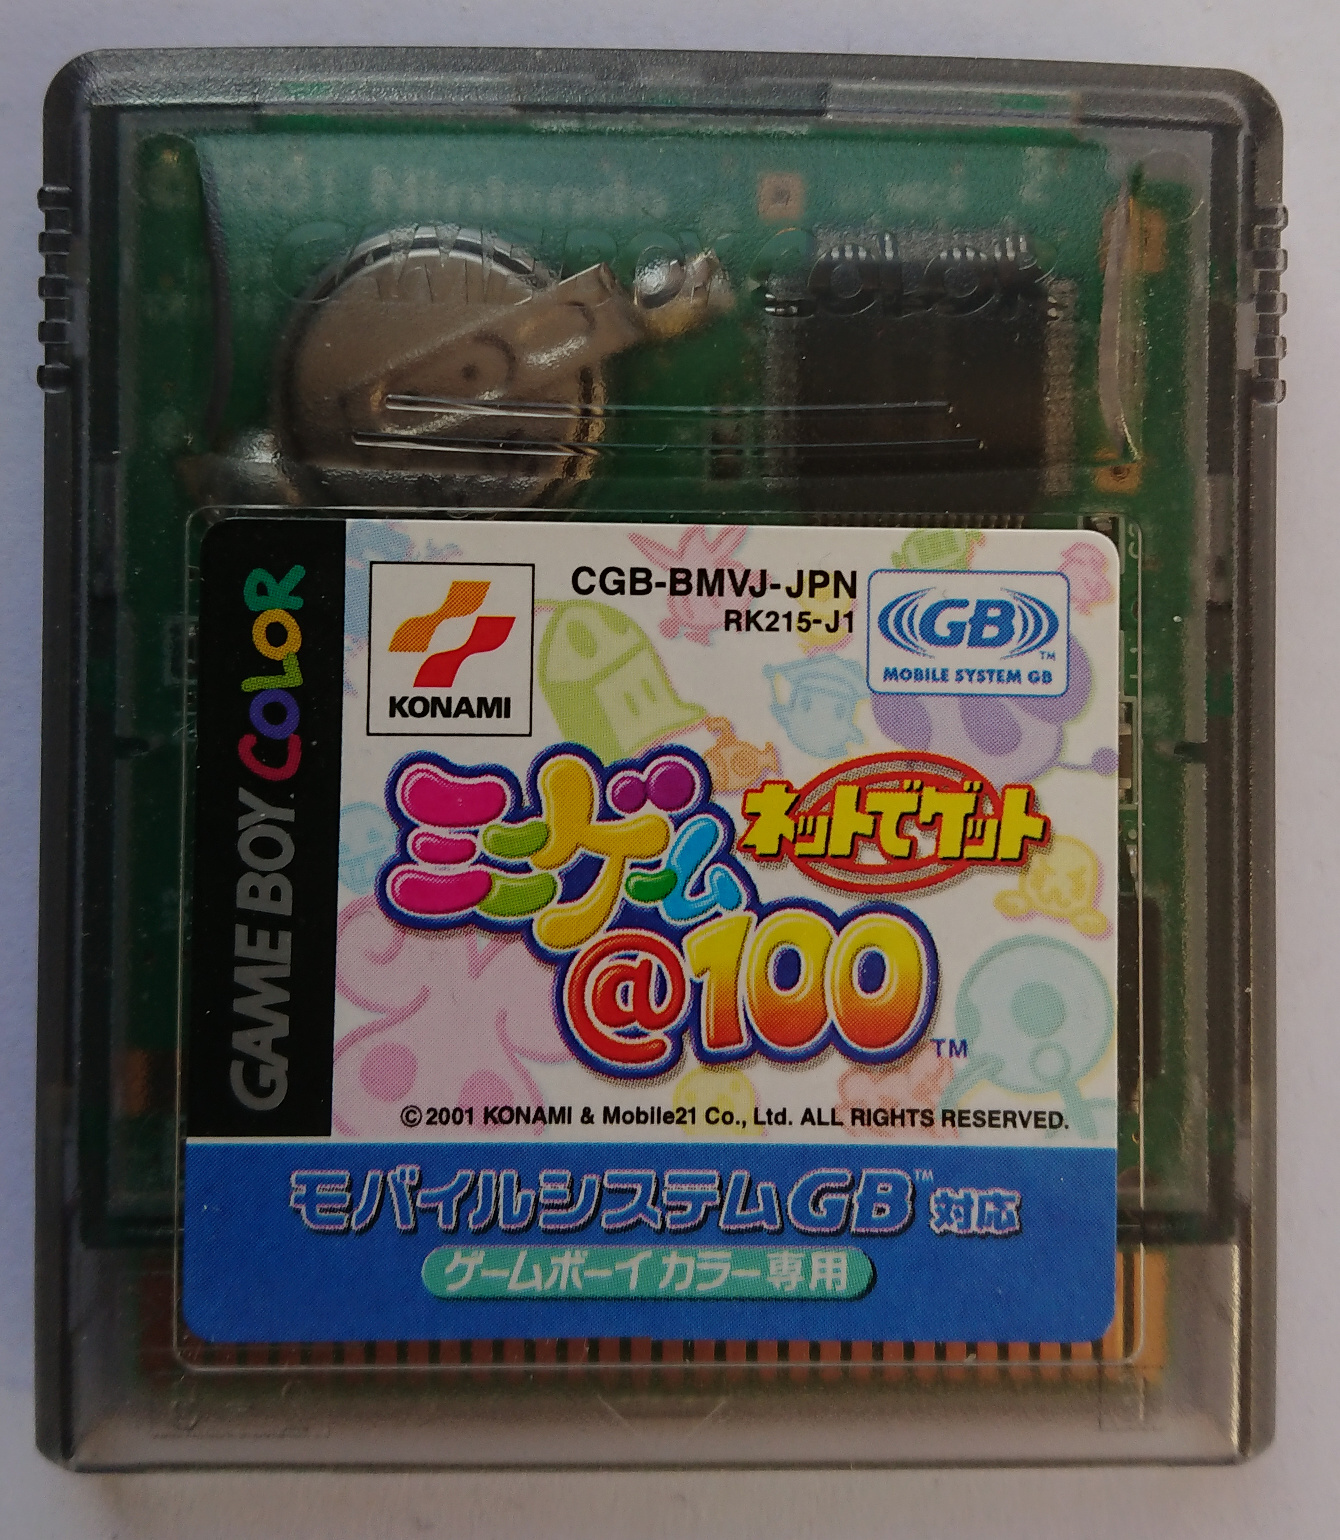 Net de Get - Minigame @ 100 (Japan): Entry #1 [gekkio] - Game Boy 